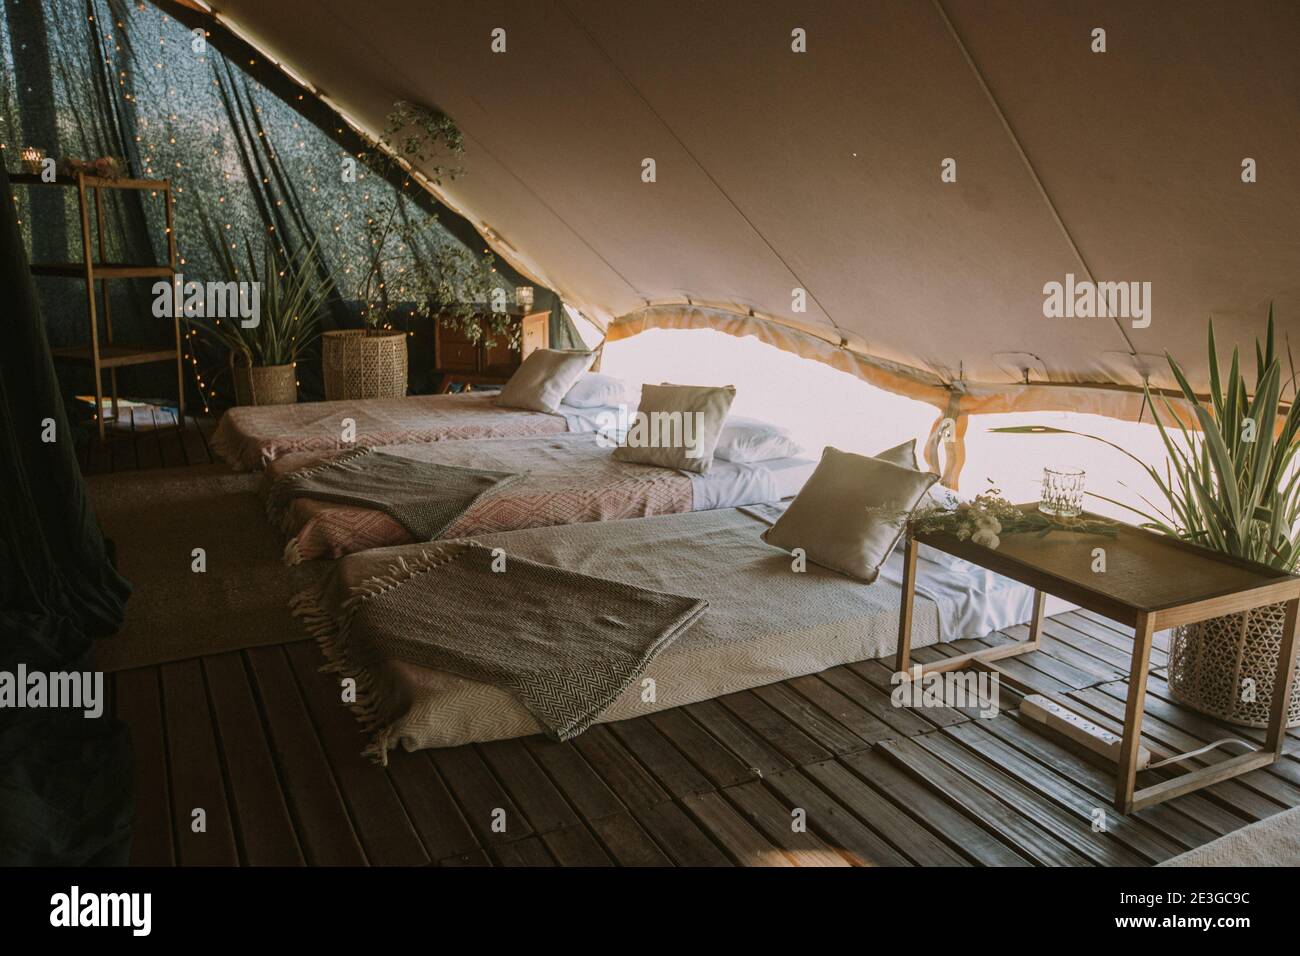 Tenda con 3 materassi, cuscini, tavolo in legno, fiori e luci di fondo. Foto Stock